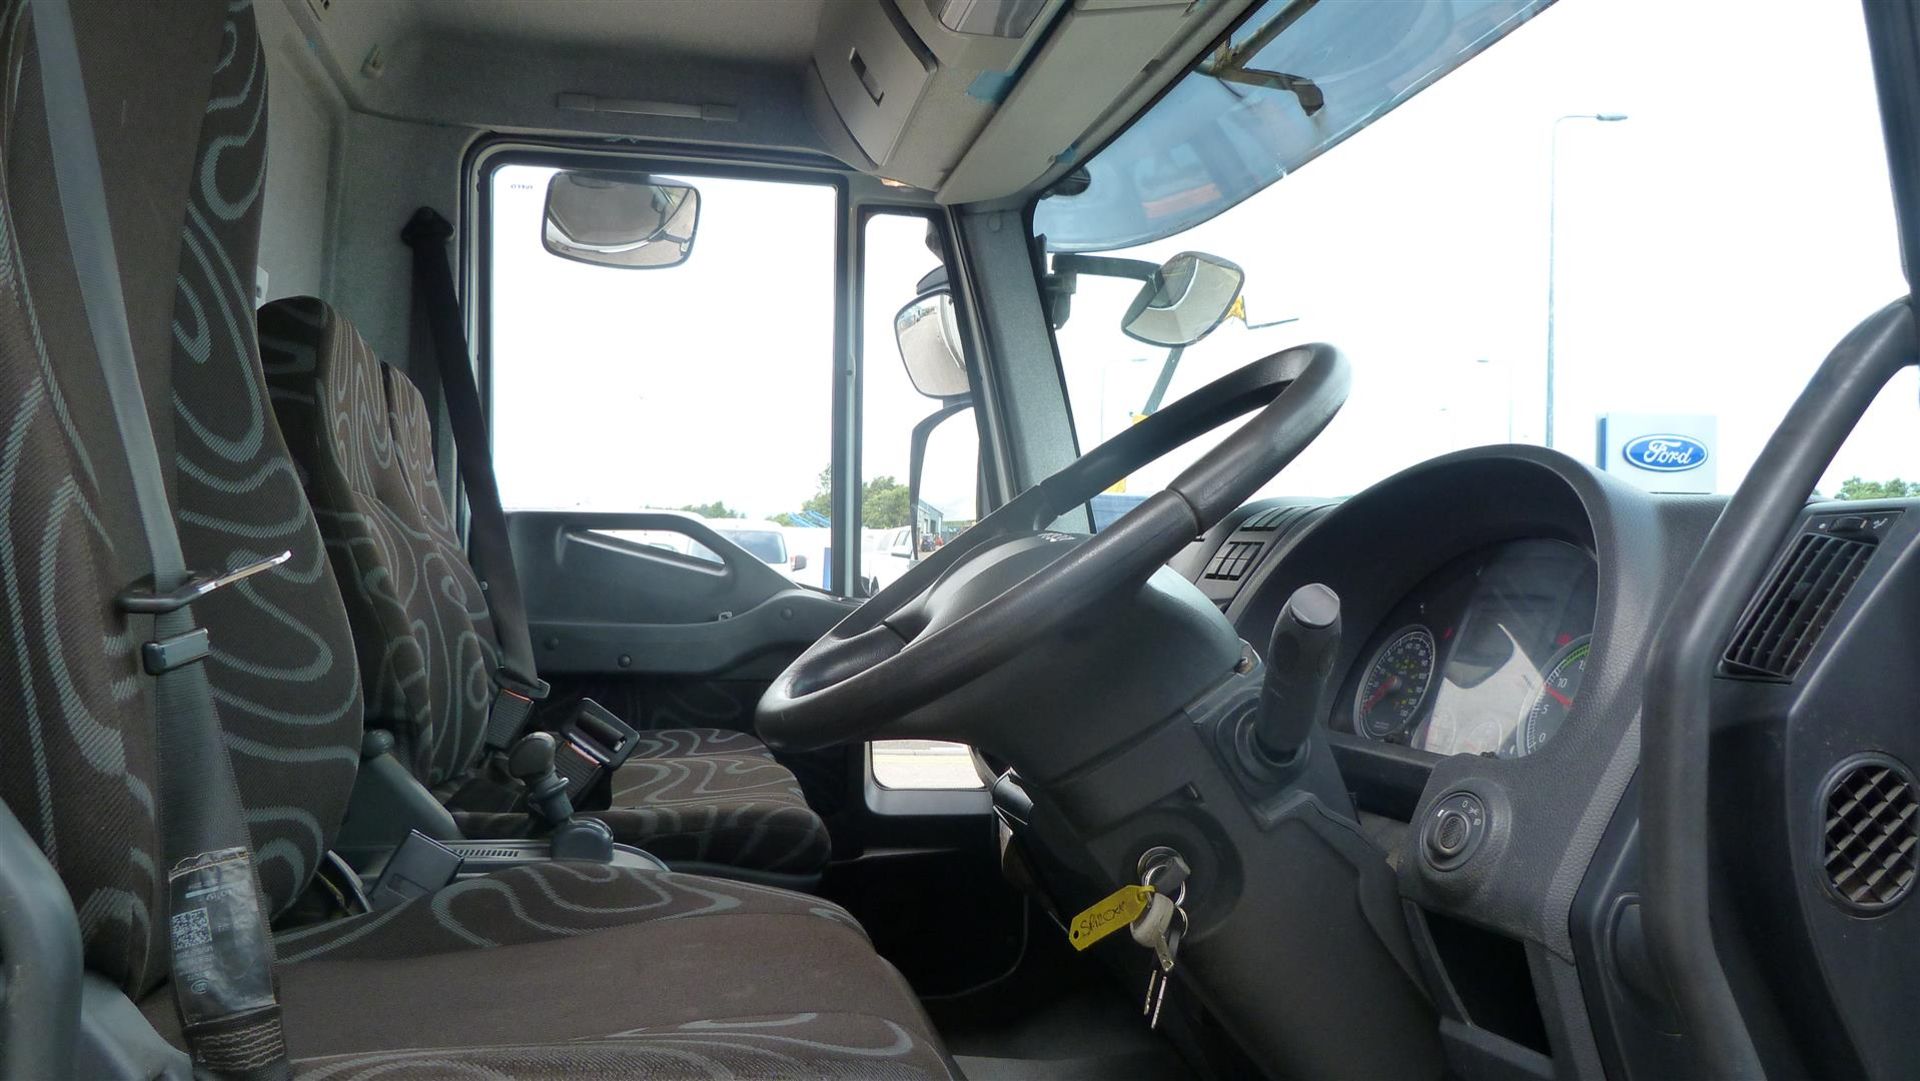 Iveco Eurocargo 75e16k - 3920cc 2 Door Truck - Image 6 of 6